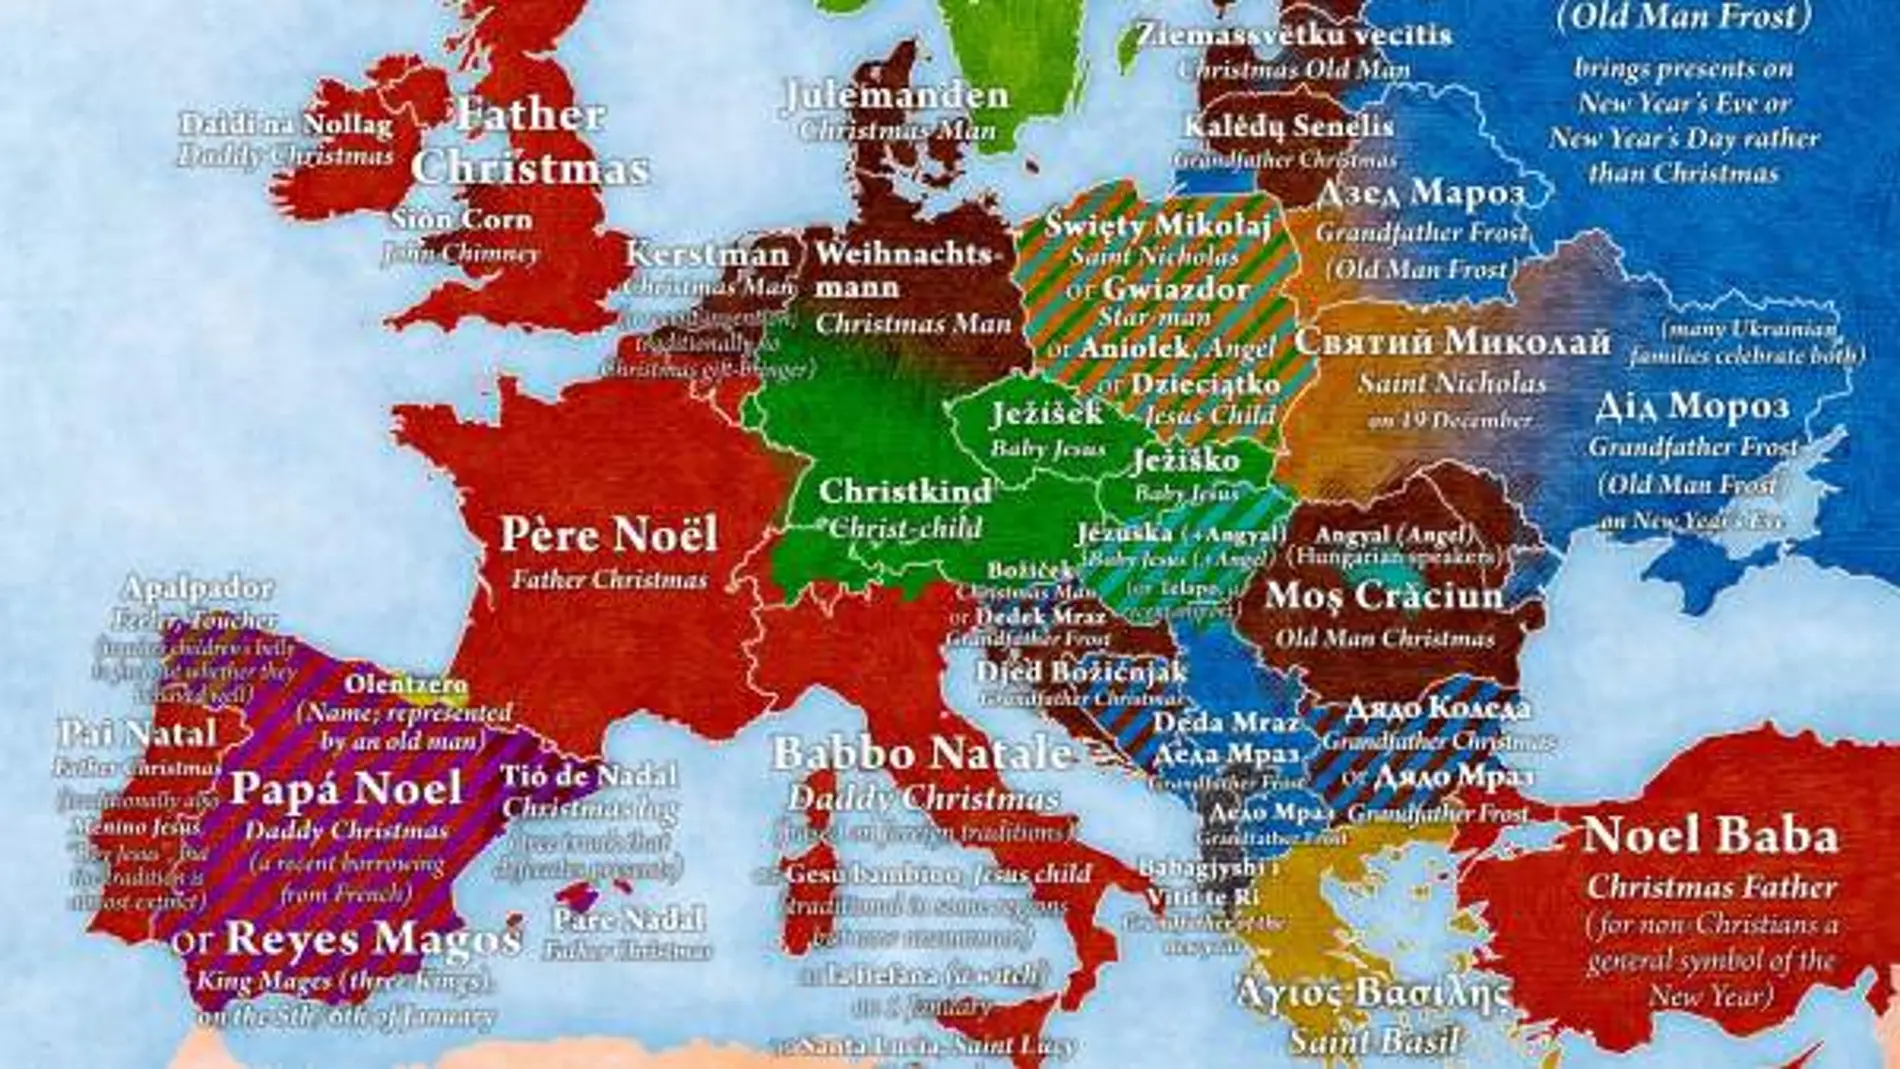 Mapa de Europa que recoge quiénes dan los regalos de Navidad en cada país / Jakubmarian.com